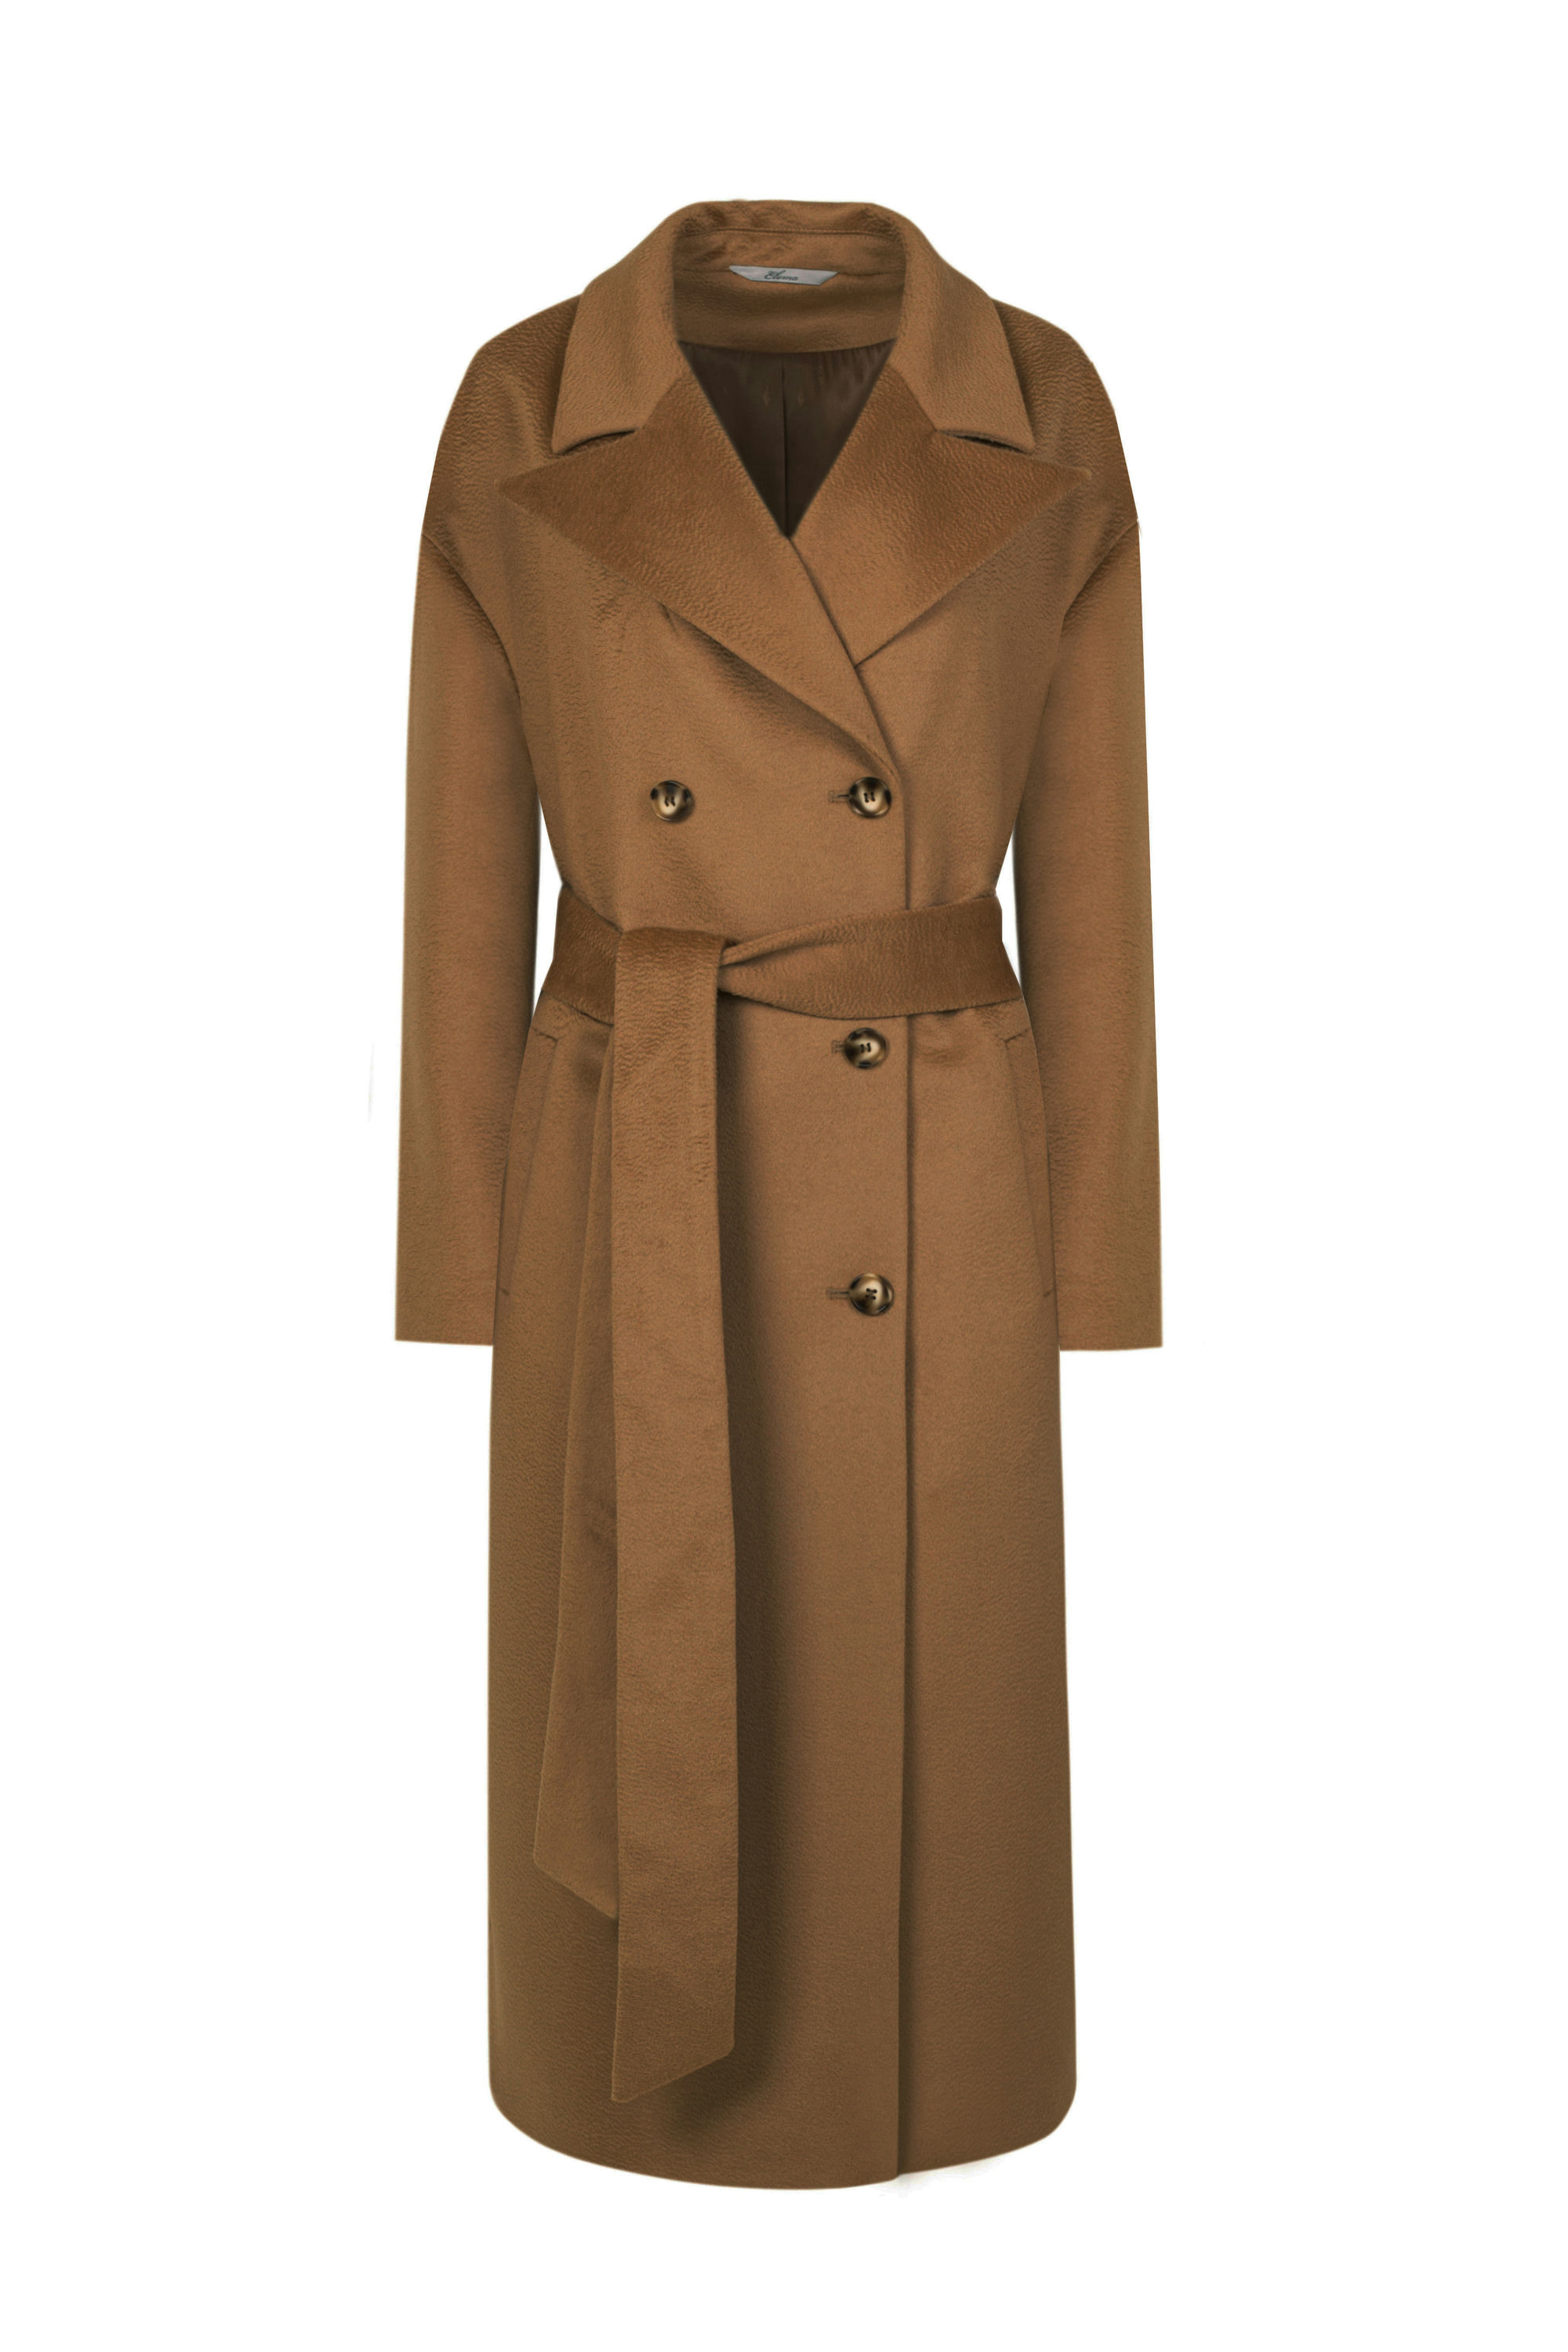 Пальто женское демисезонное 1-13140-1. Фото 4.